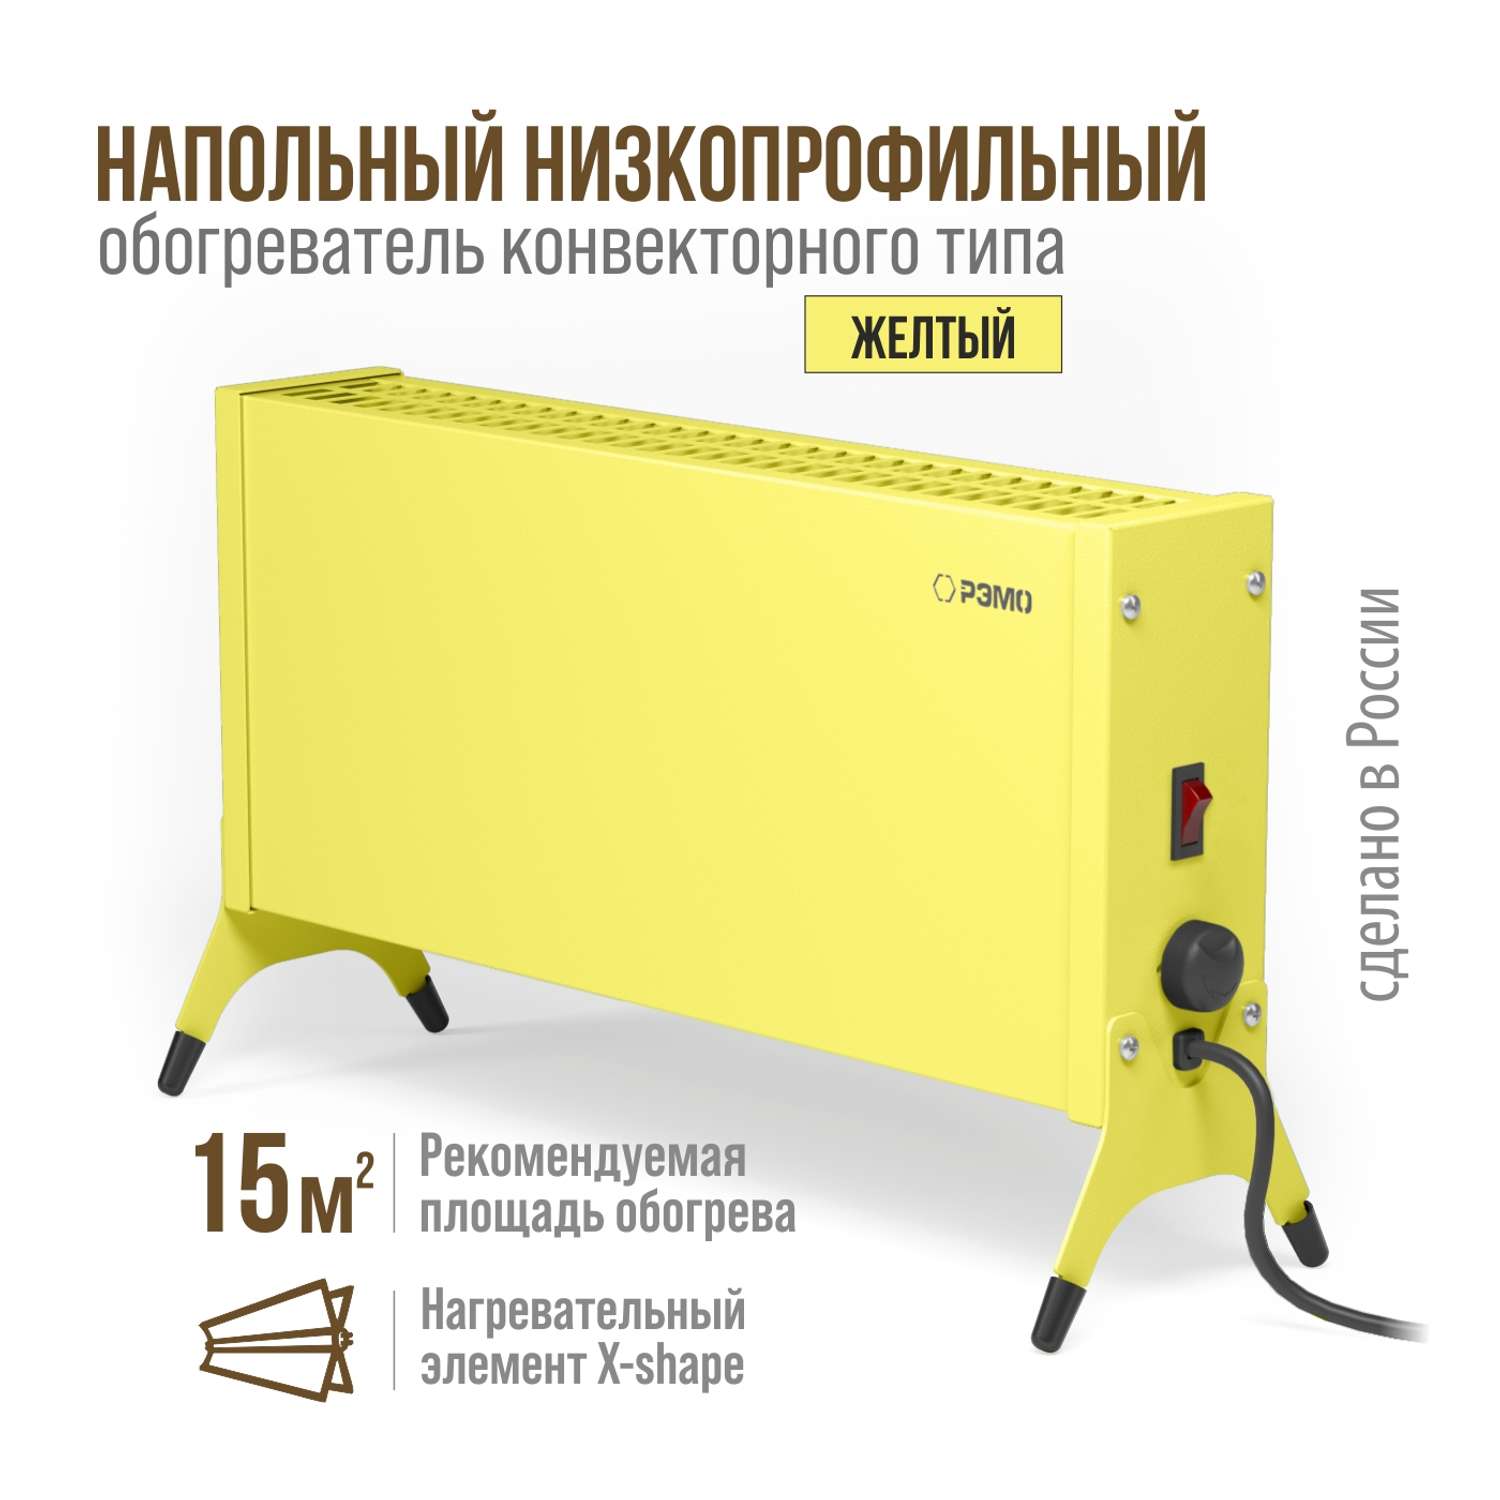 Конвектор электрический РЭМО Такса СБ-1000.1 желтый Х-элемент - фото 2